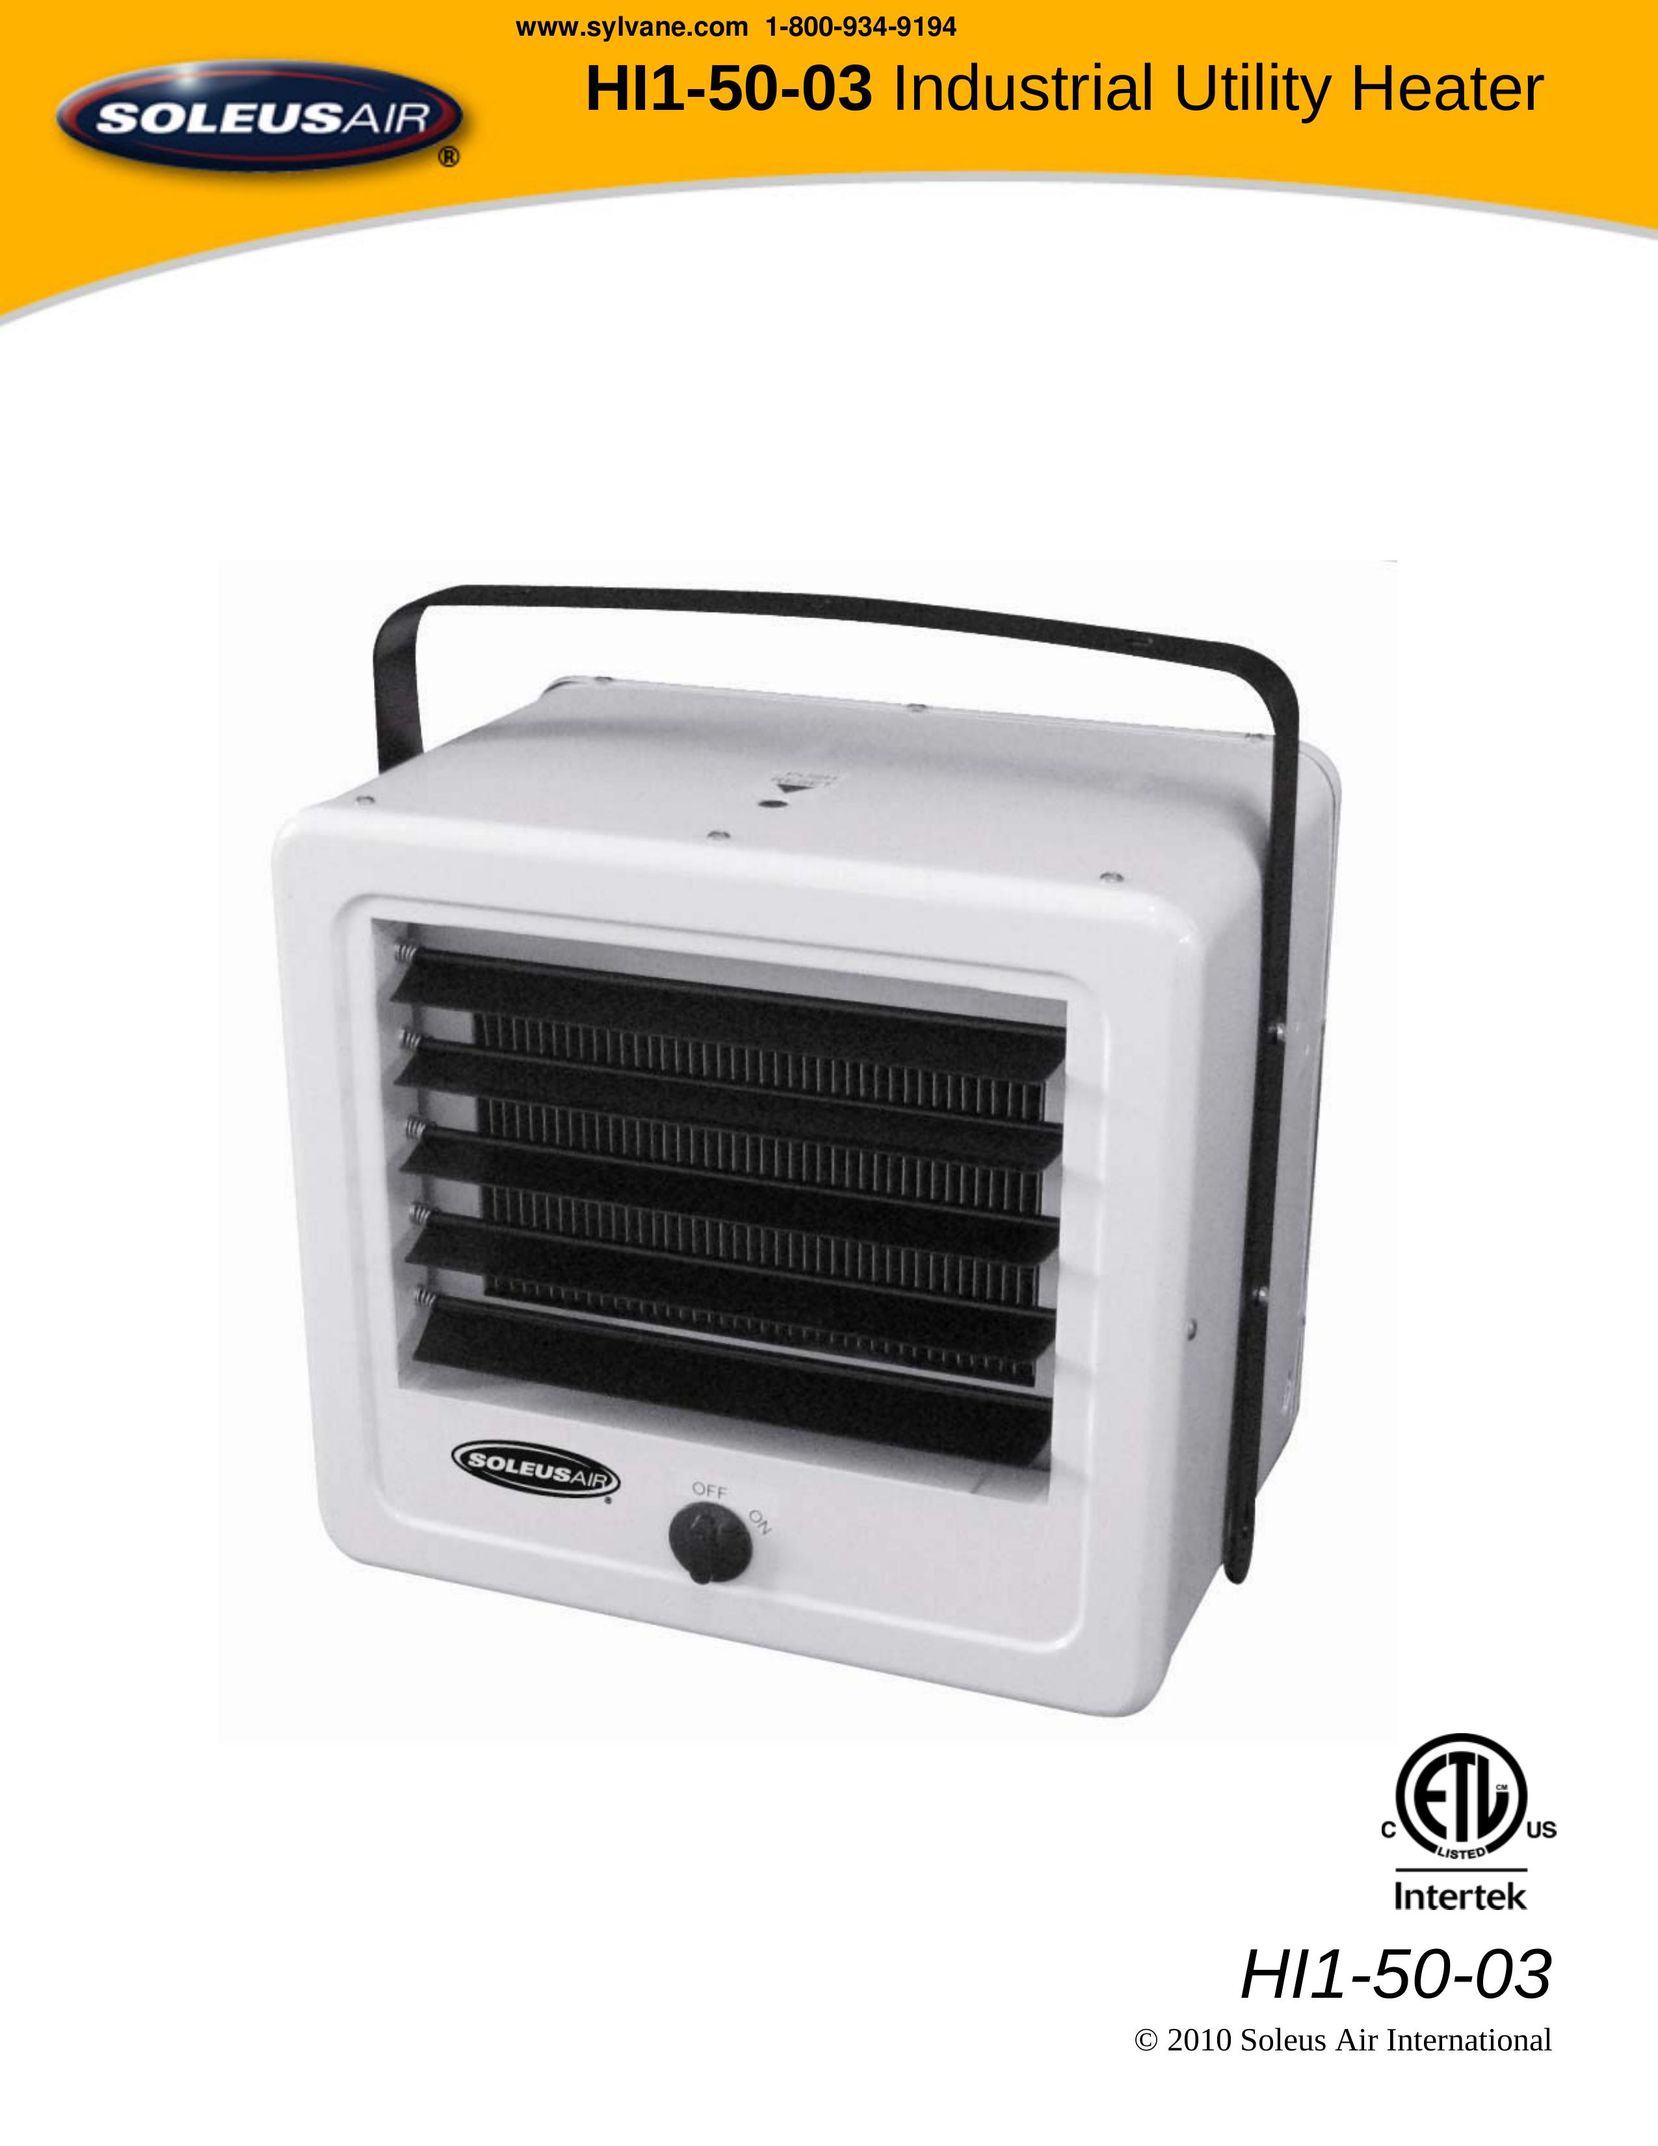 Soleus Air HI1-50-03 Electric Heater User Manual